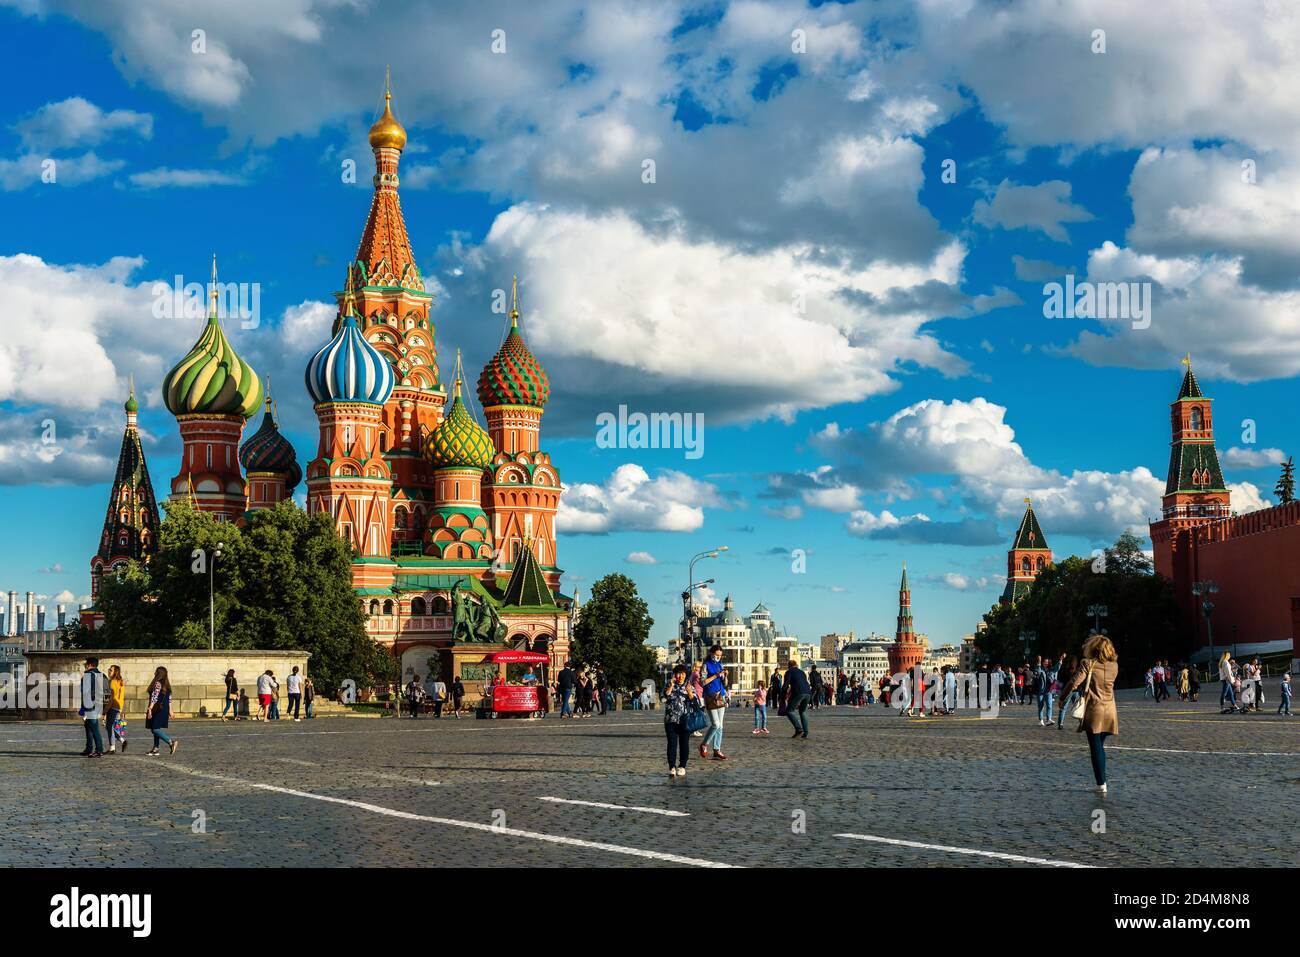 Moskau - 23. Juli 2020: Menschen gehen auf dem Roten Platz im Sommer in Moskau, Russland. Dieser Ort ist die Top-Touristenattraktion von Moskau. Wunderschöne Aussicht auf St. Ba Stockfoto